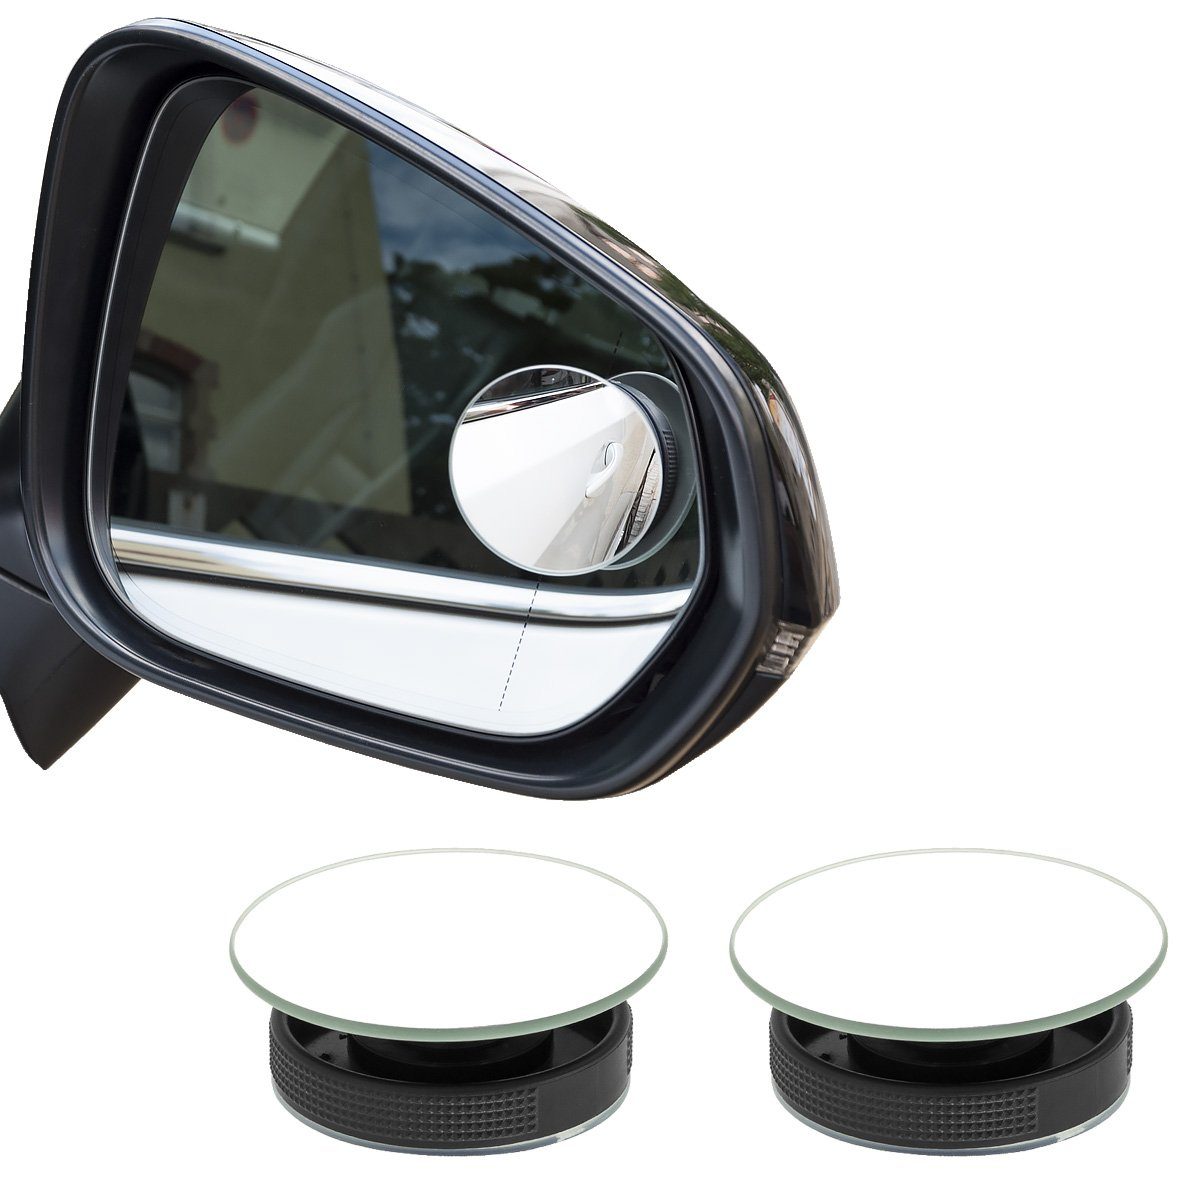 Toter Winkel Spiegel, Universal Einstellbare Auto Rückansicht Zusatzspiegel  HD Glas Weitwinkel Seite Rückspiegel